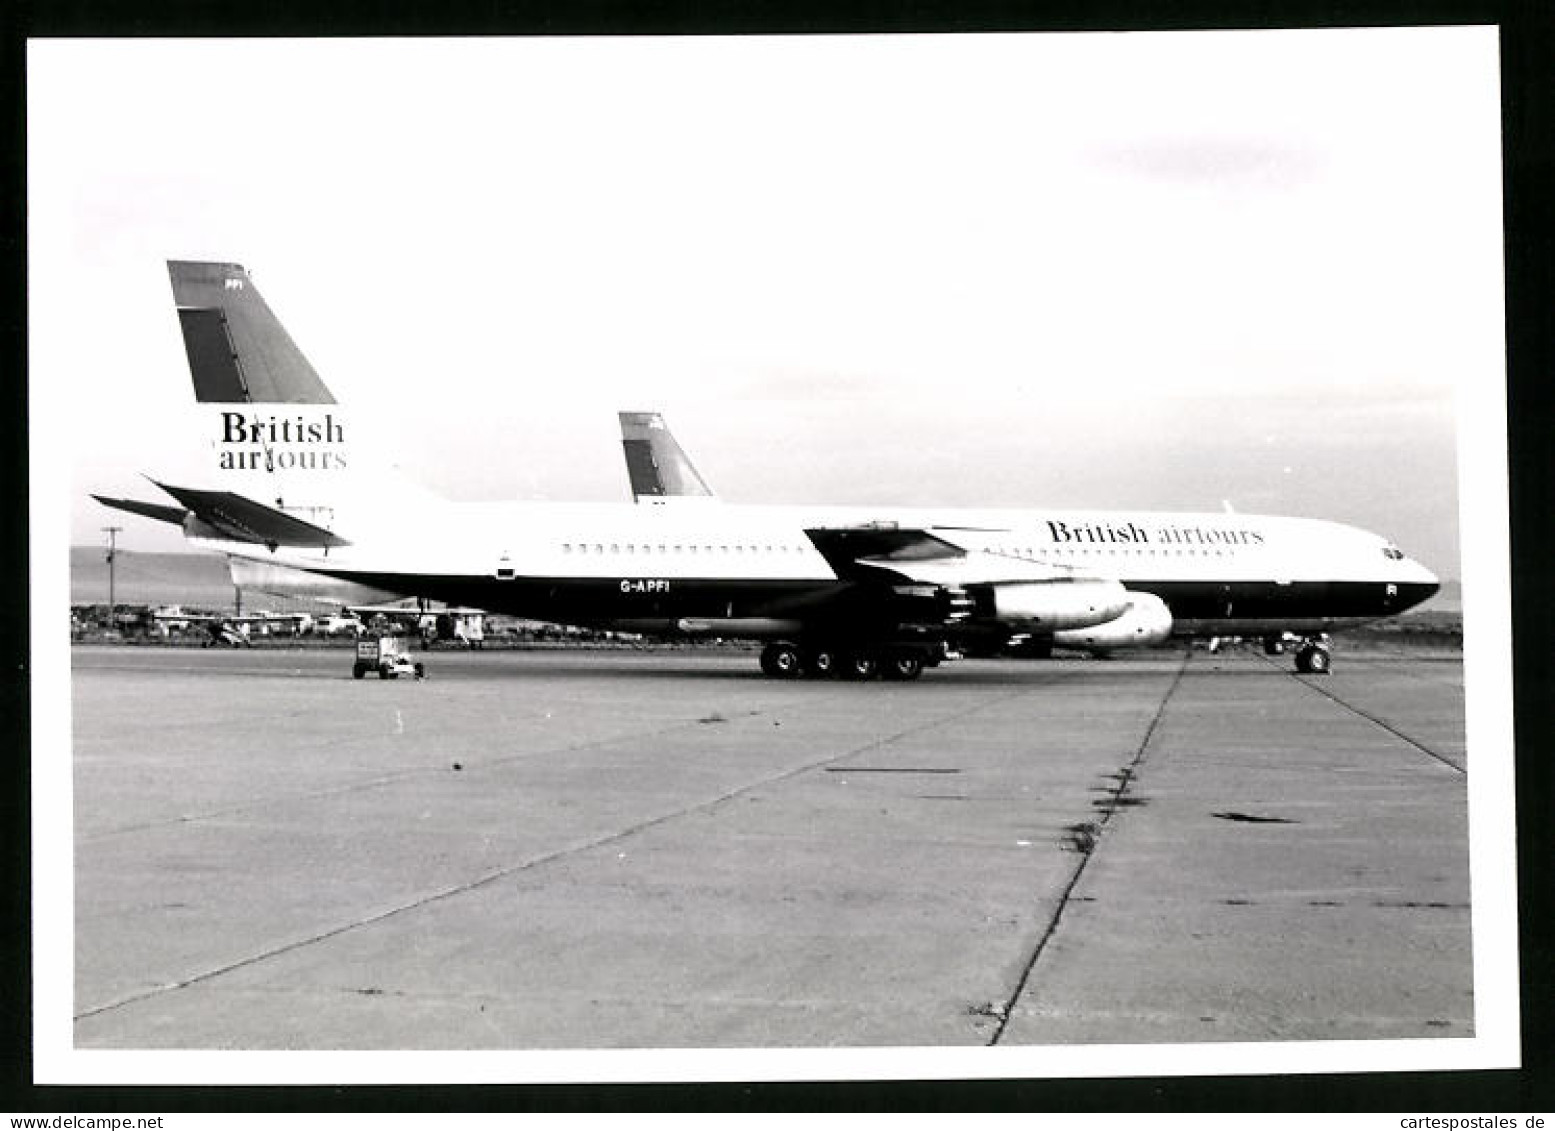 Fotografie Flugzeug Boeing 707, Passagierflugzeug British Airtours, Kennung G-APFI  - Aviación